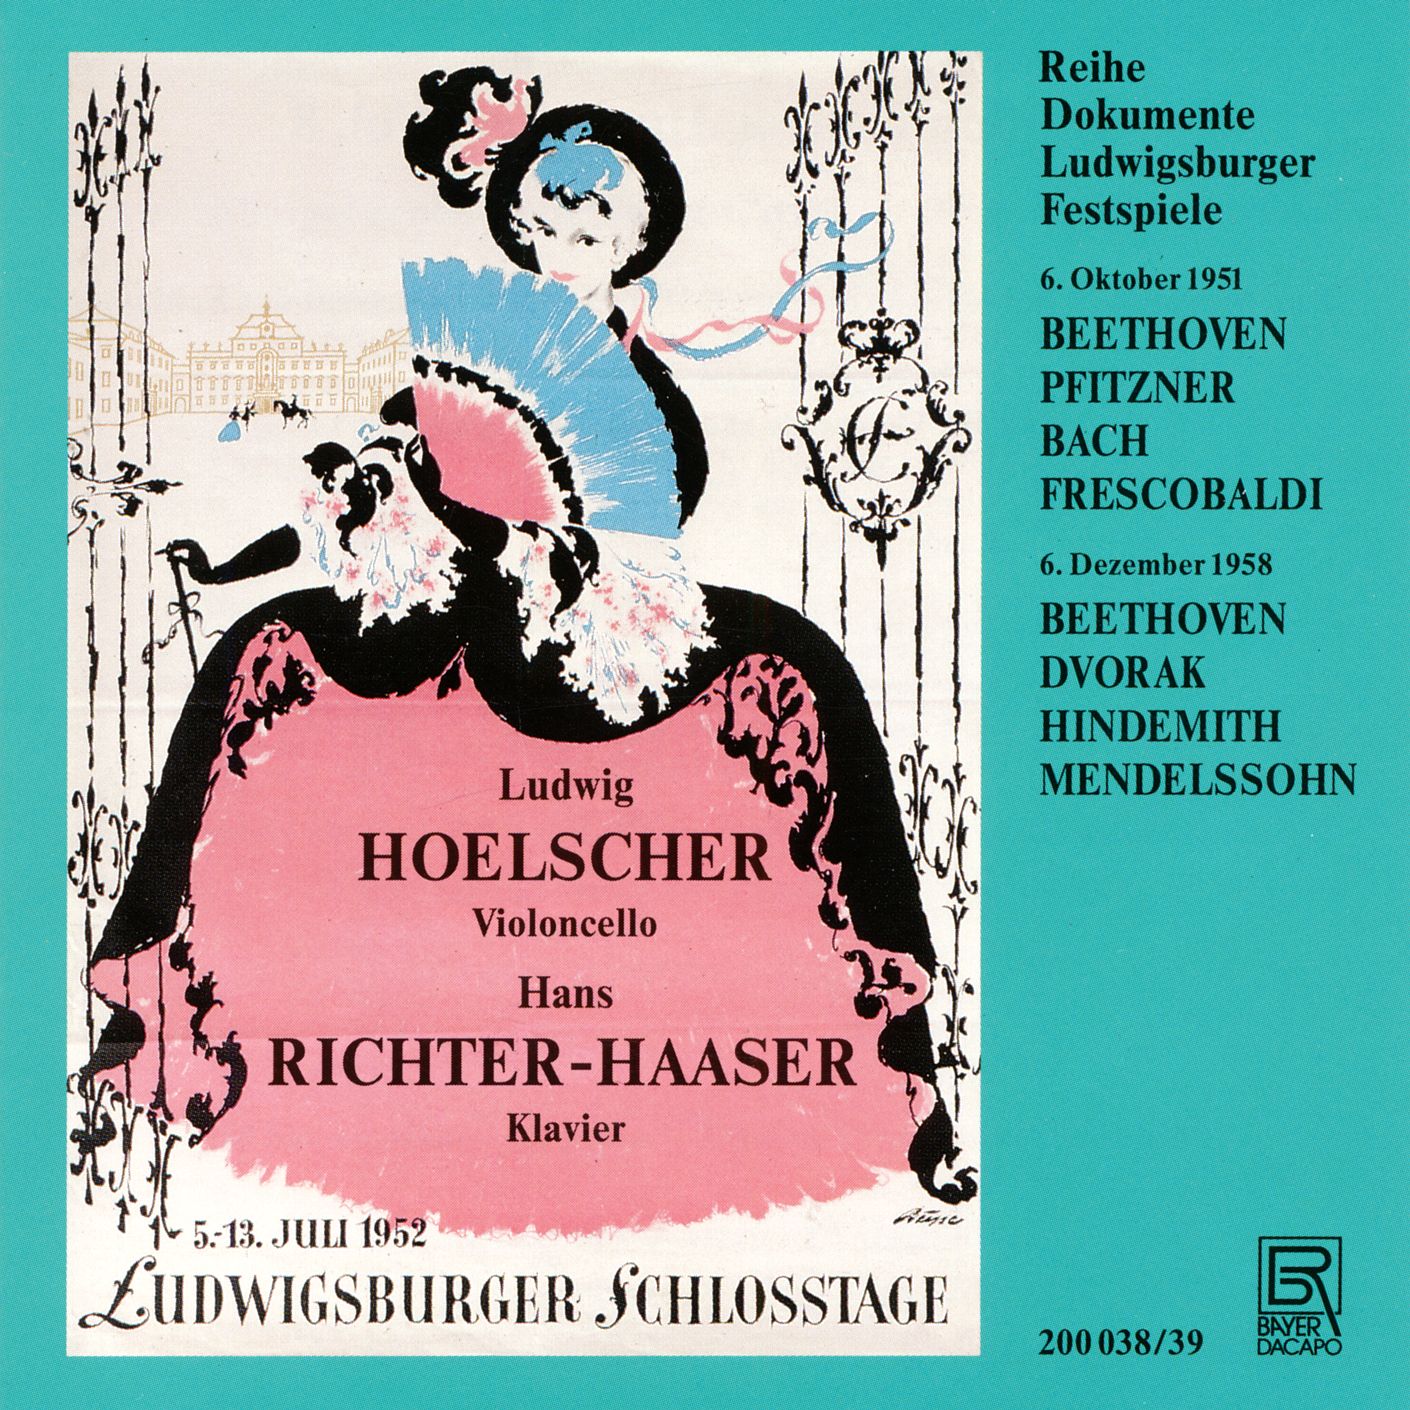 Hoelscher Edition 8